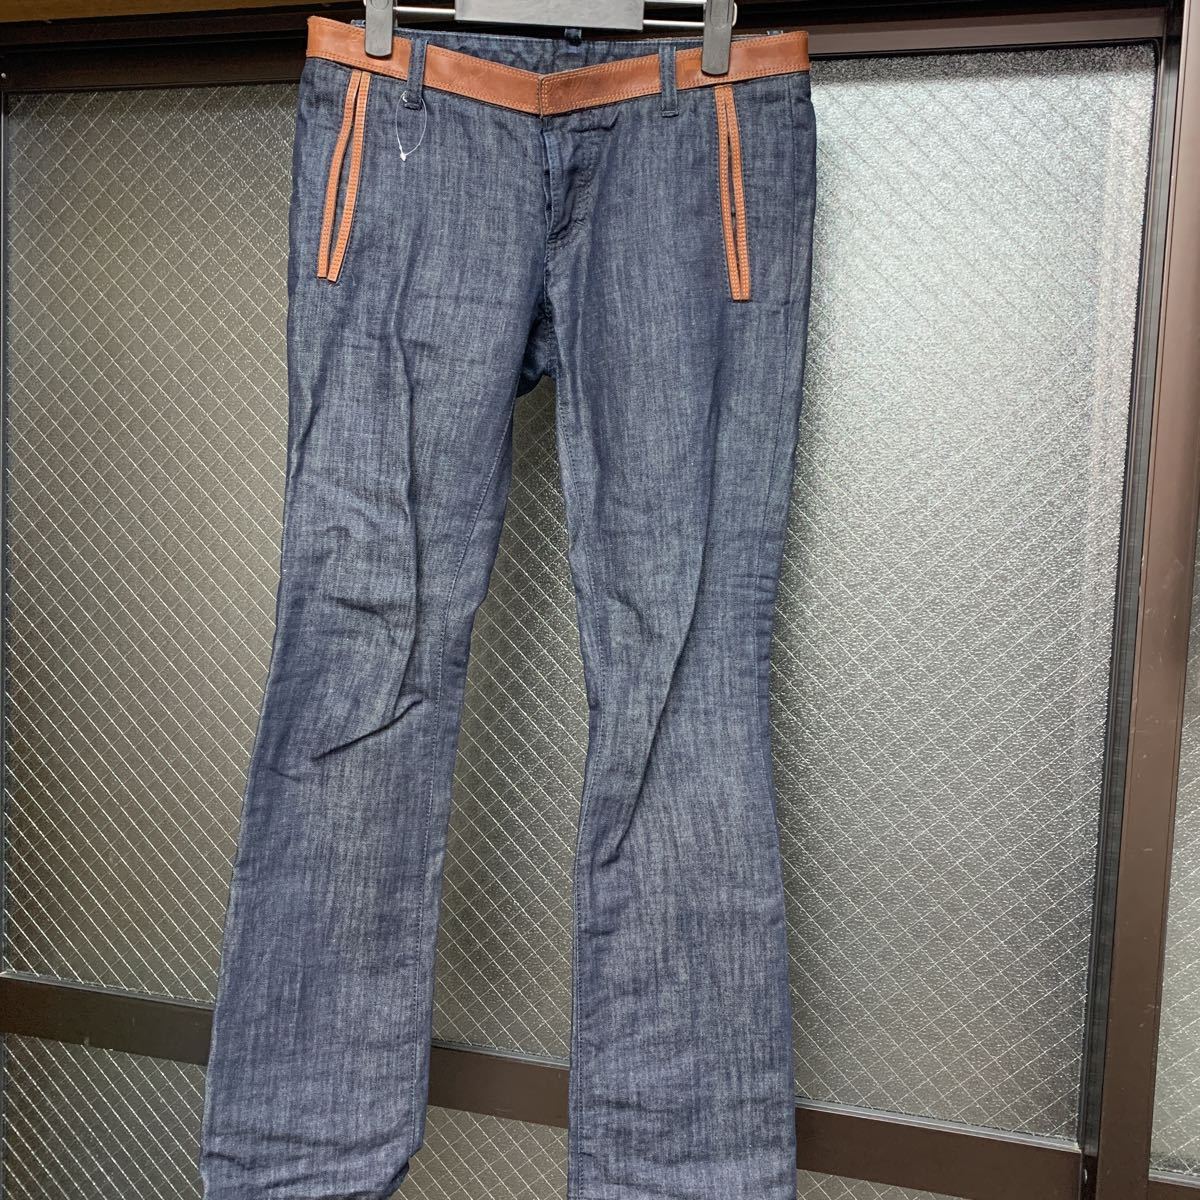 DSQUARD DESQUA ALDE Джинсовая джинсовая джинсы штаны 40 дам